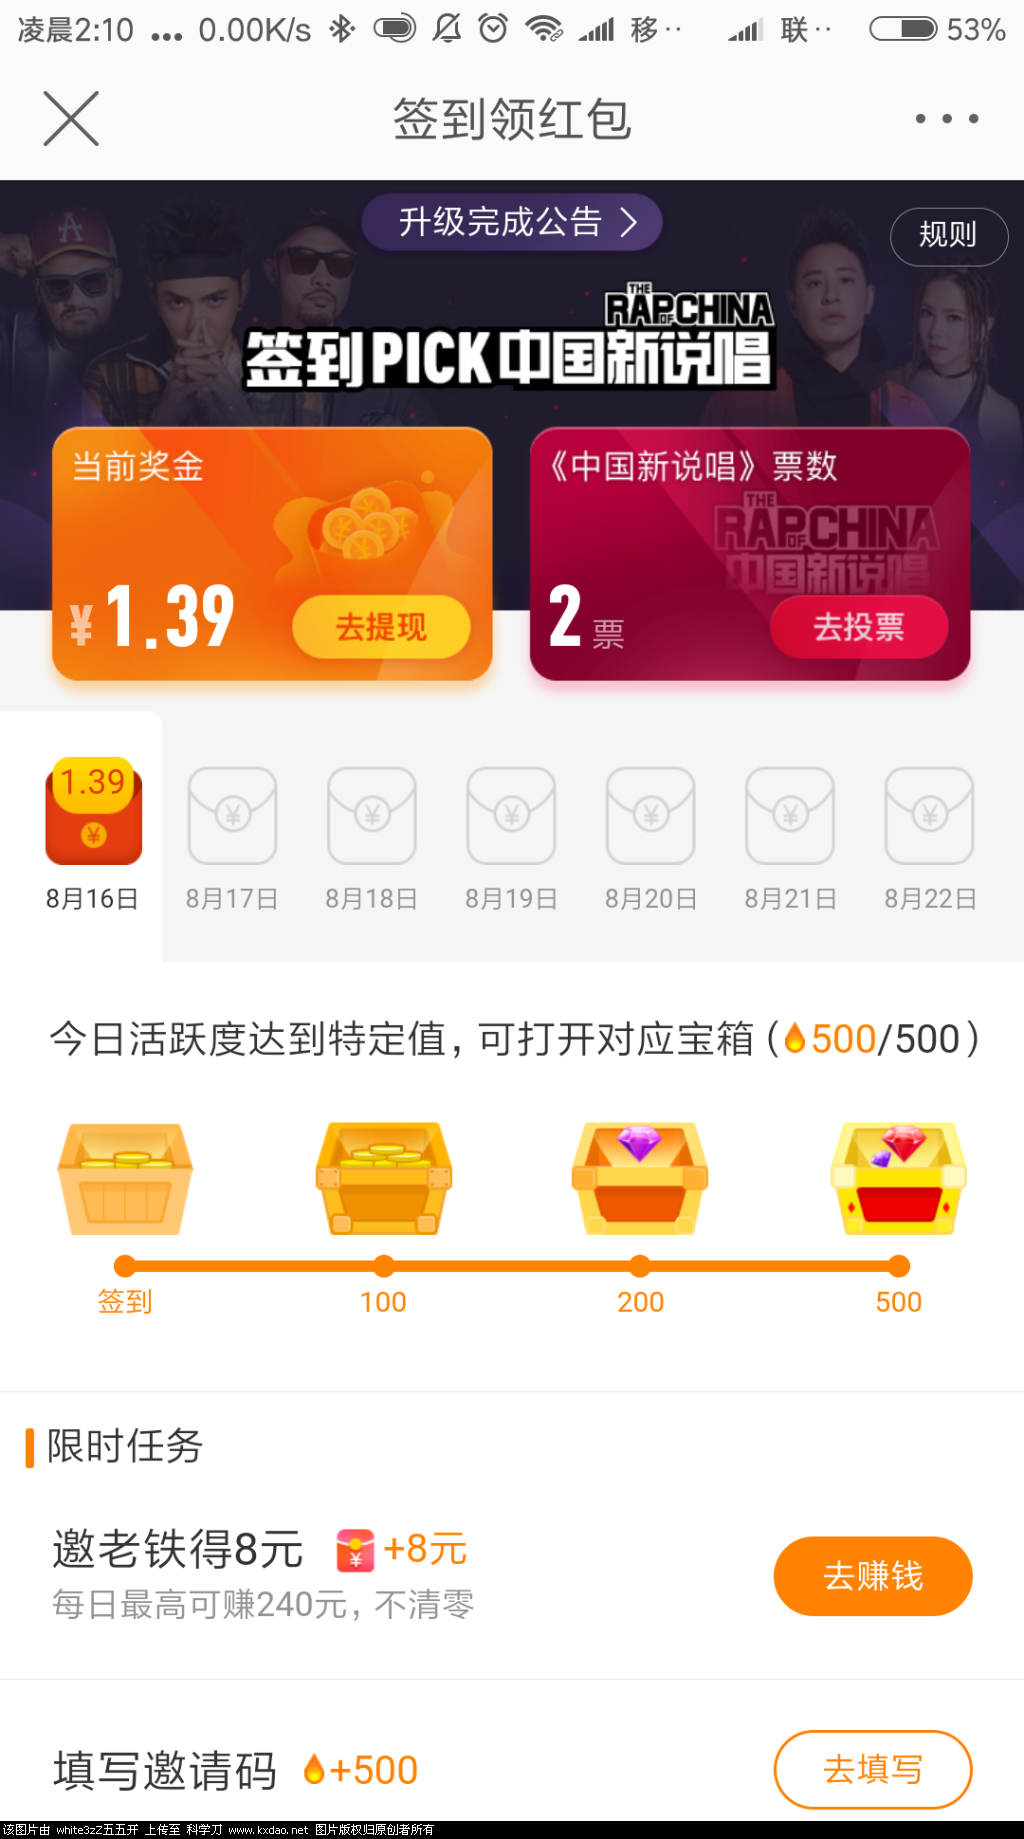 Screenshot_2018-08-16-02-10-41-043_com.sina.weibo.png